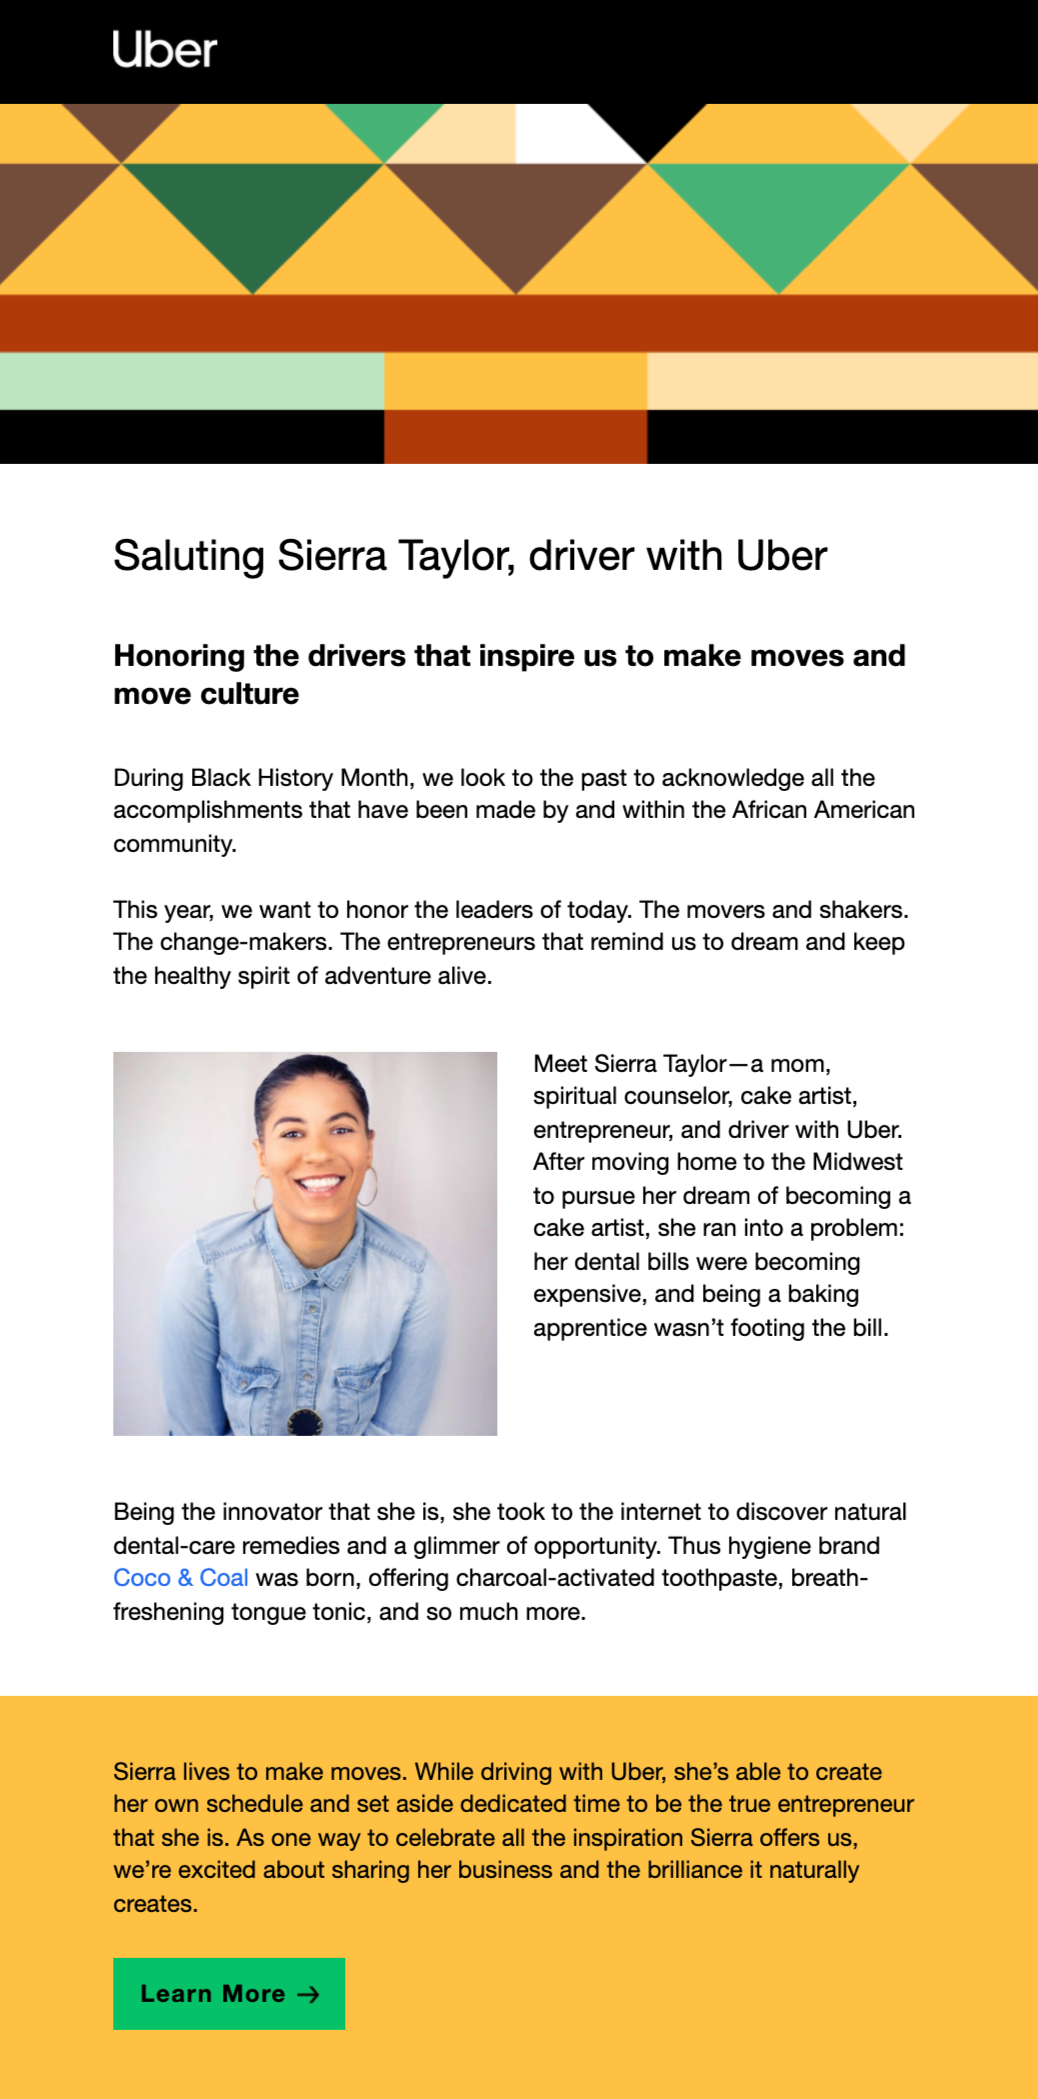 Uber Employee Collaboration